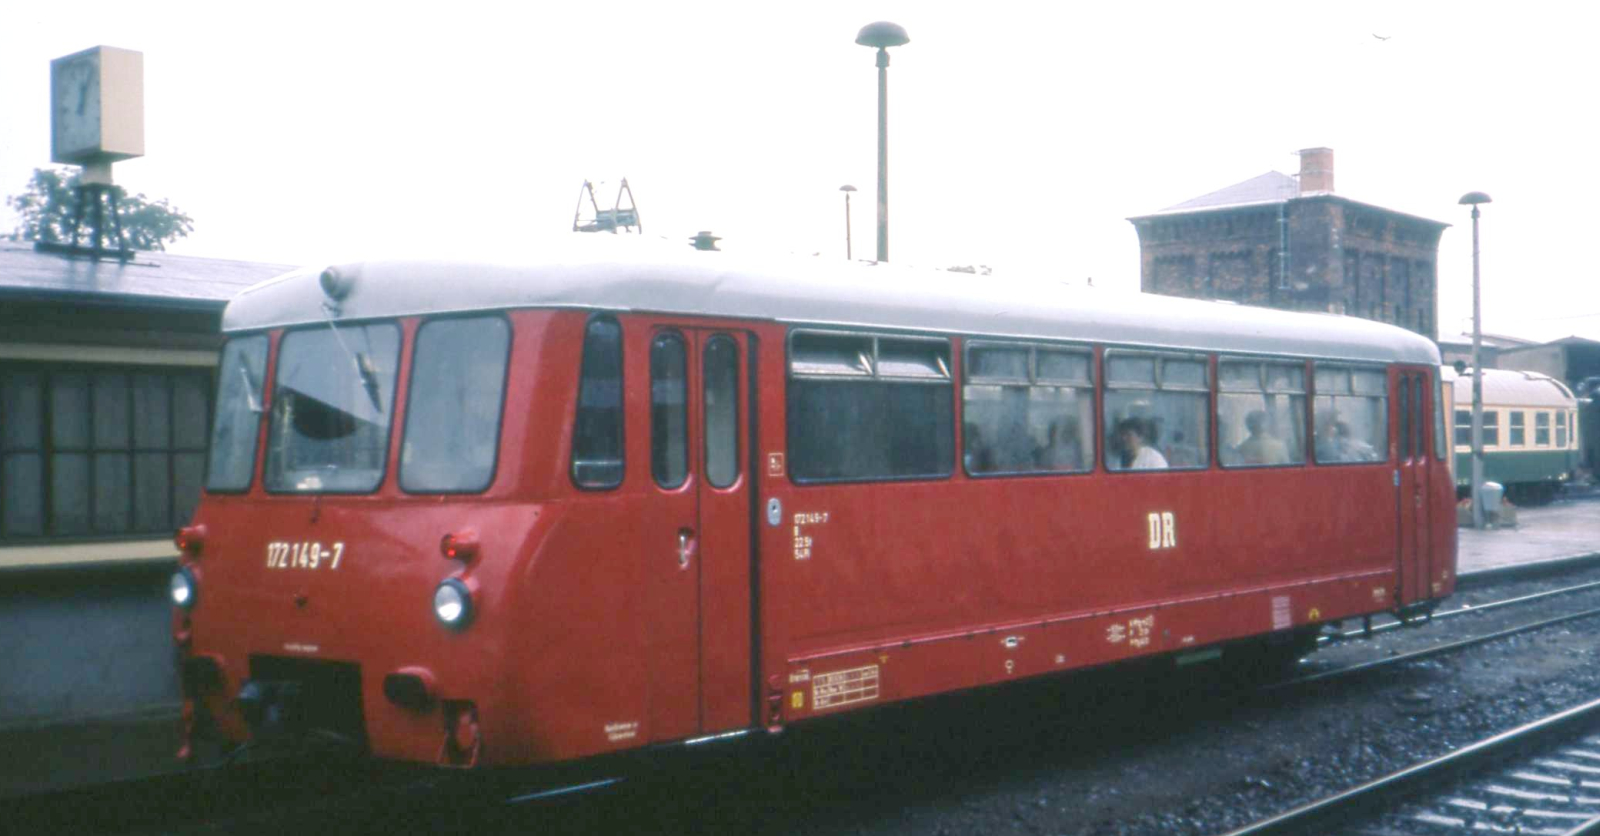 172 149 in 1991 in Gotha